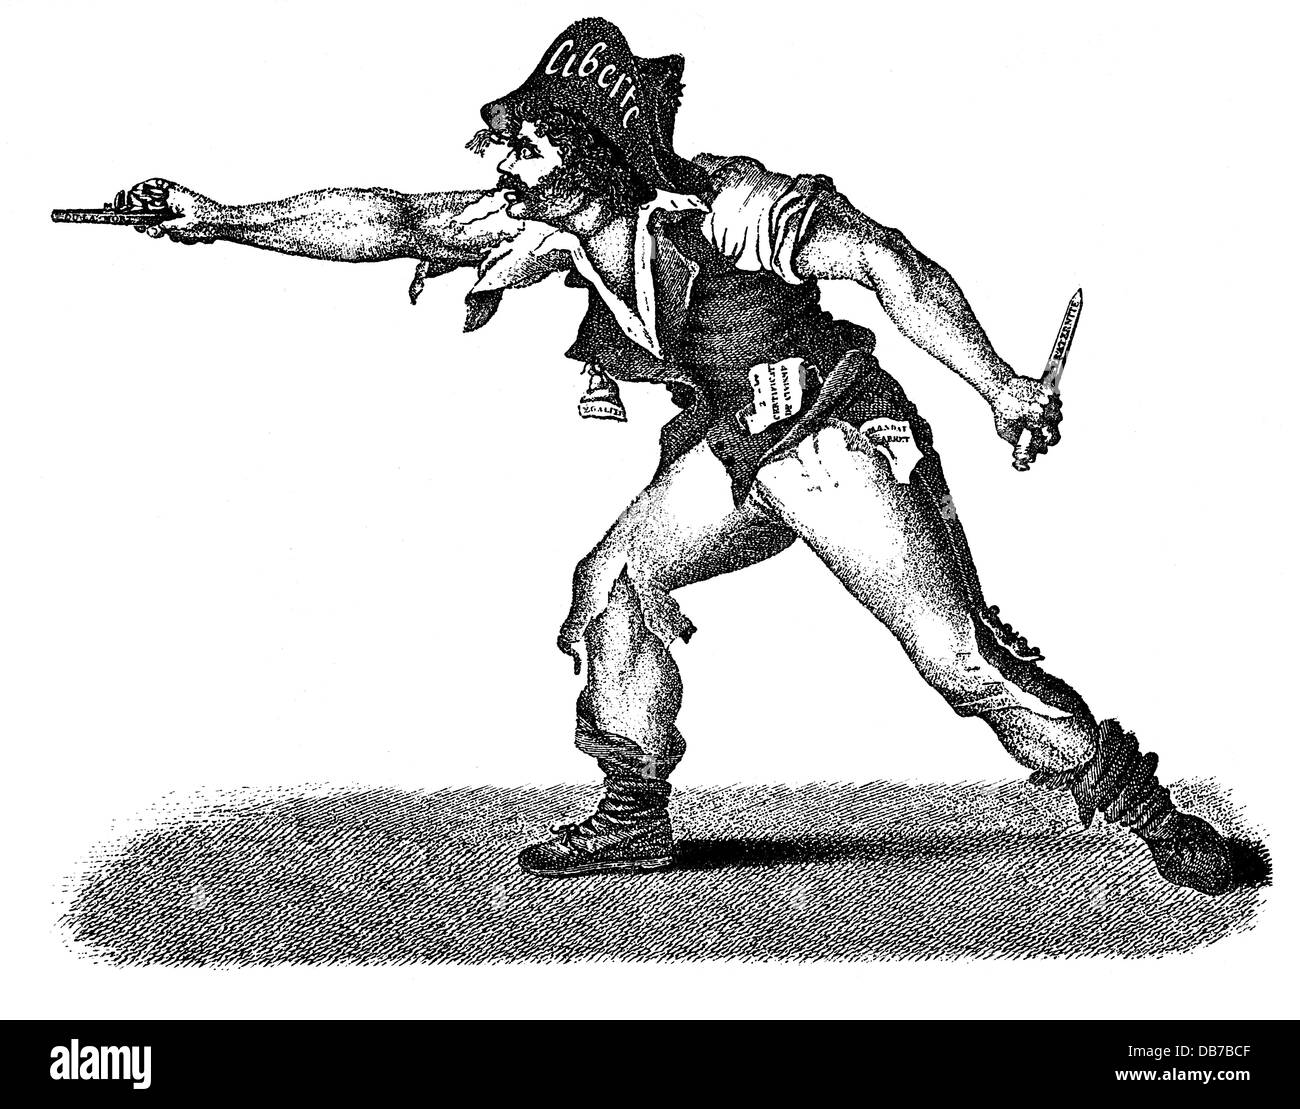 Rivoluzione francese 1789 - 1799, Giacobini, caricatura, 'Le patriote exclusif', contemporanea incisione su rame, artista del diritto d'autore non deve essere cancellata Foto Stock